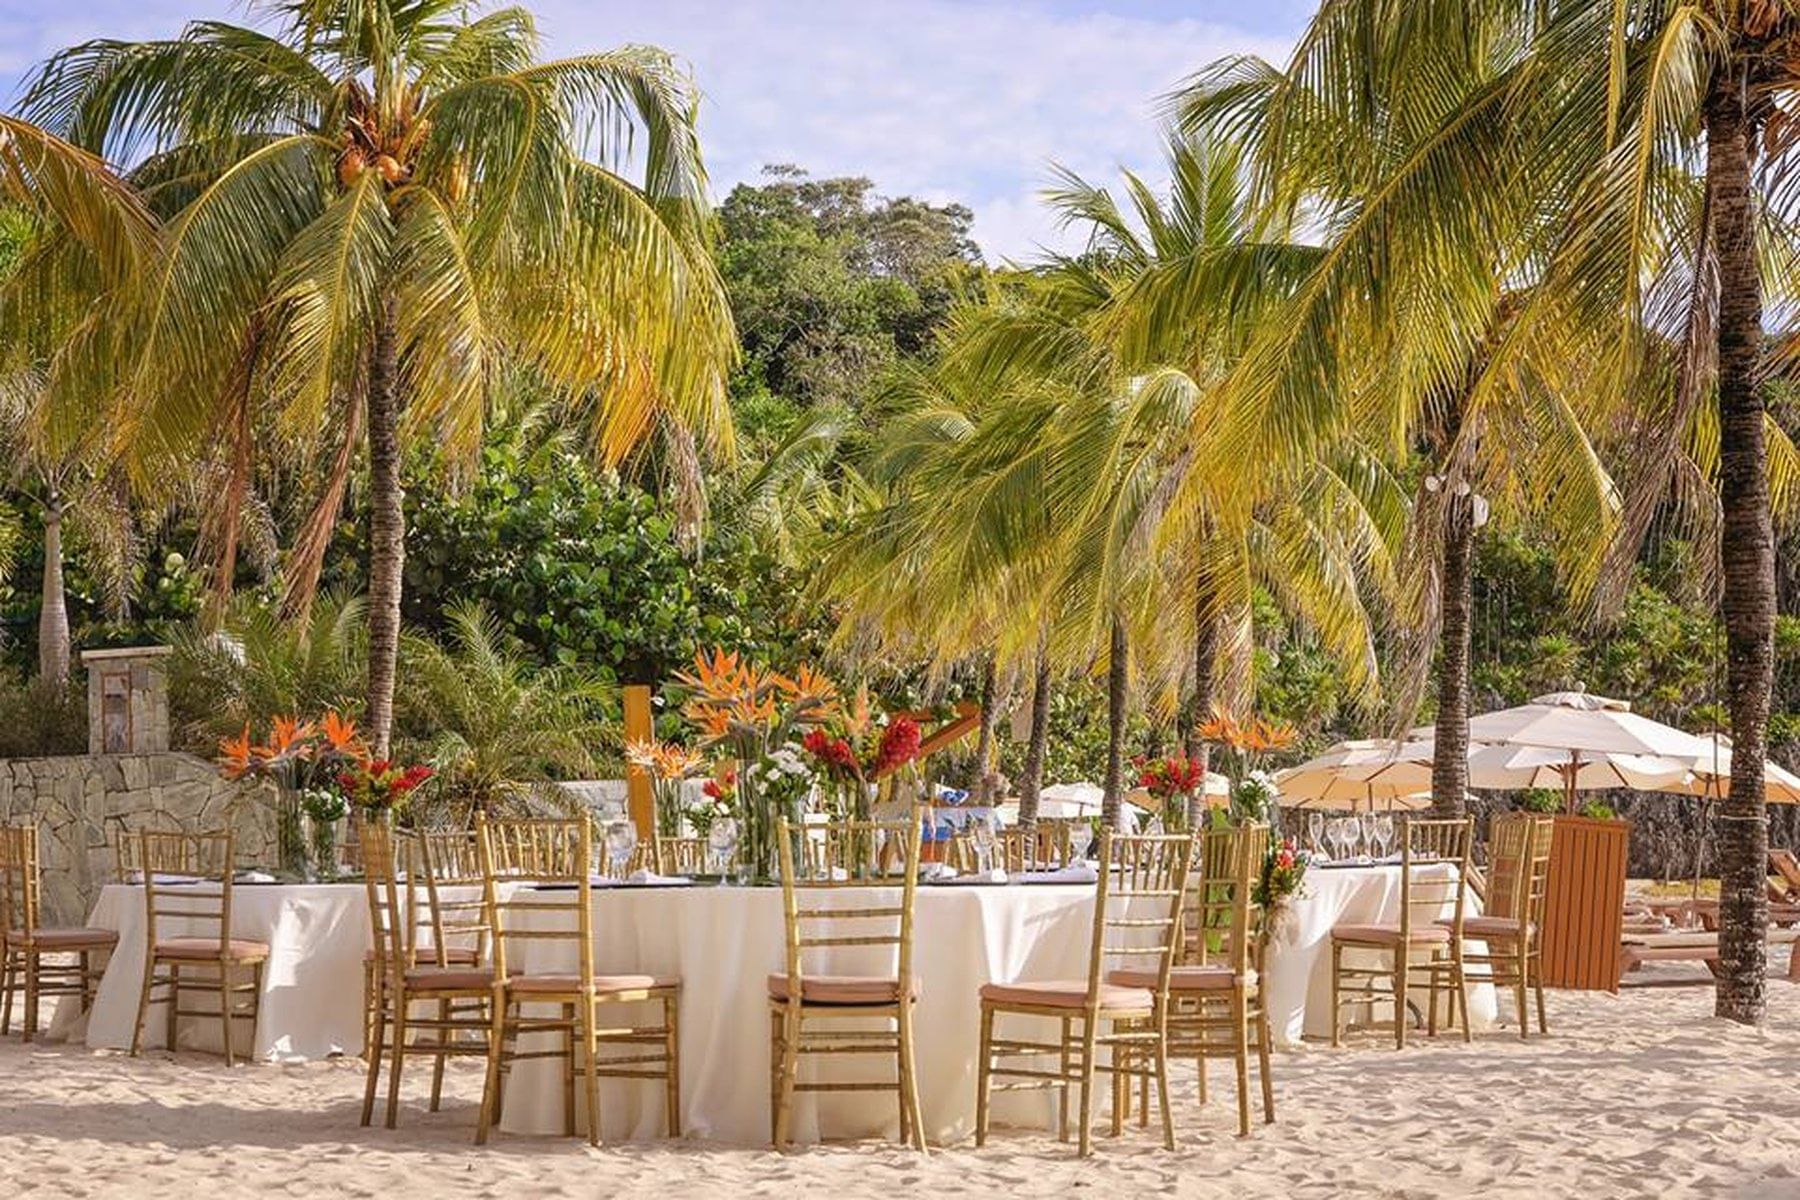 tables set on beach near palm trees